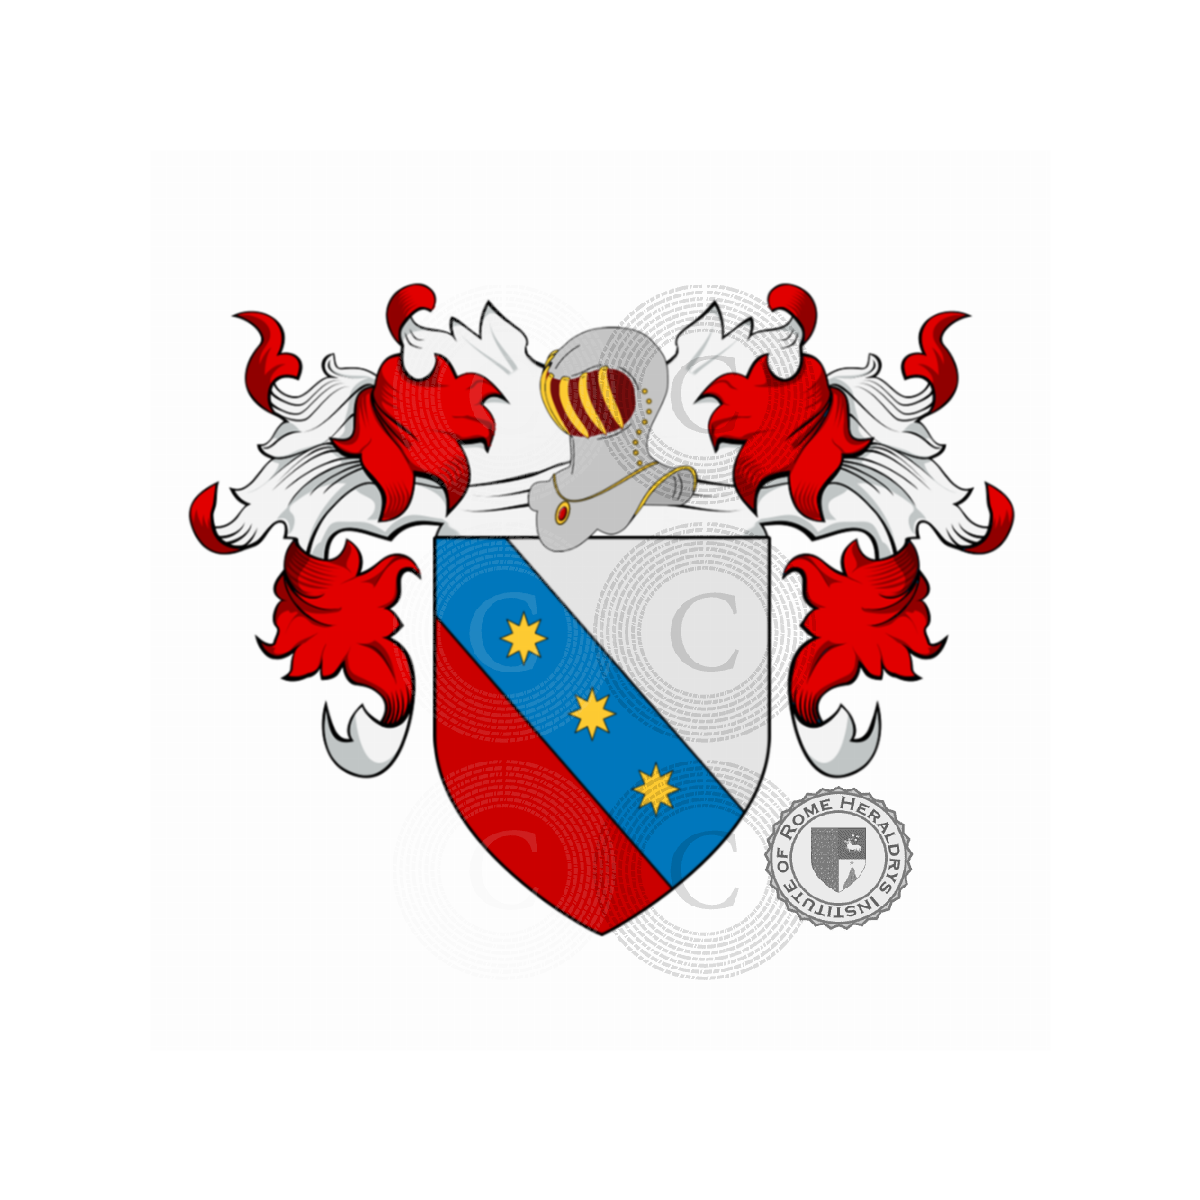 Escudo de la familiaMariani, Marianna,Mariano,Marliani